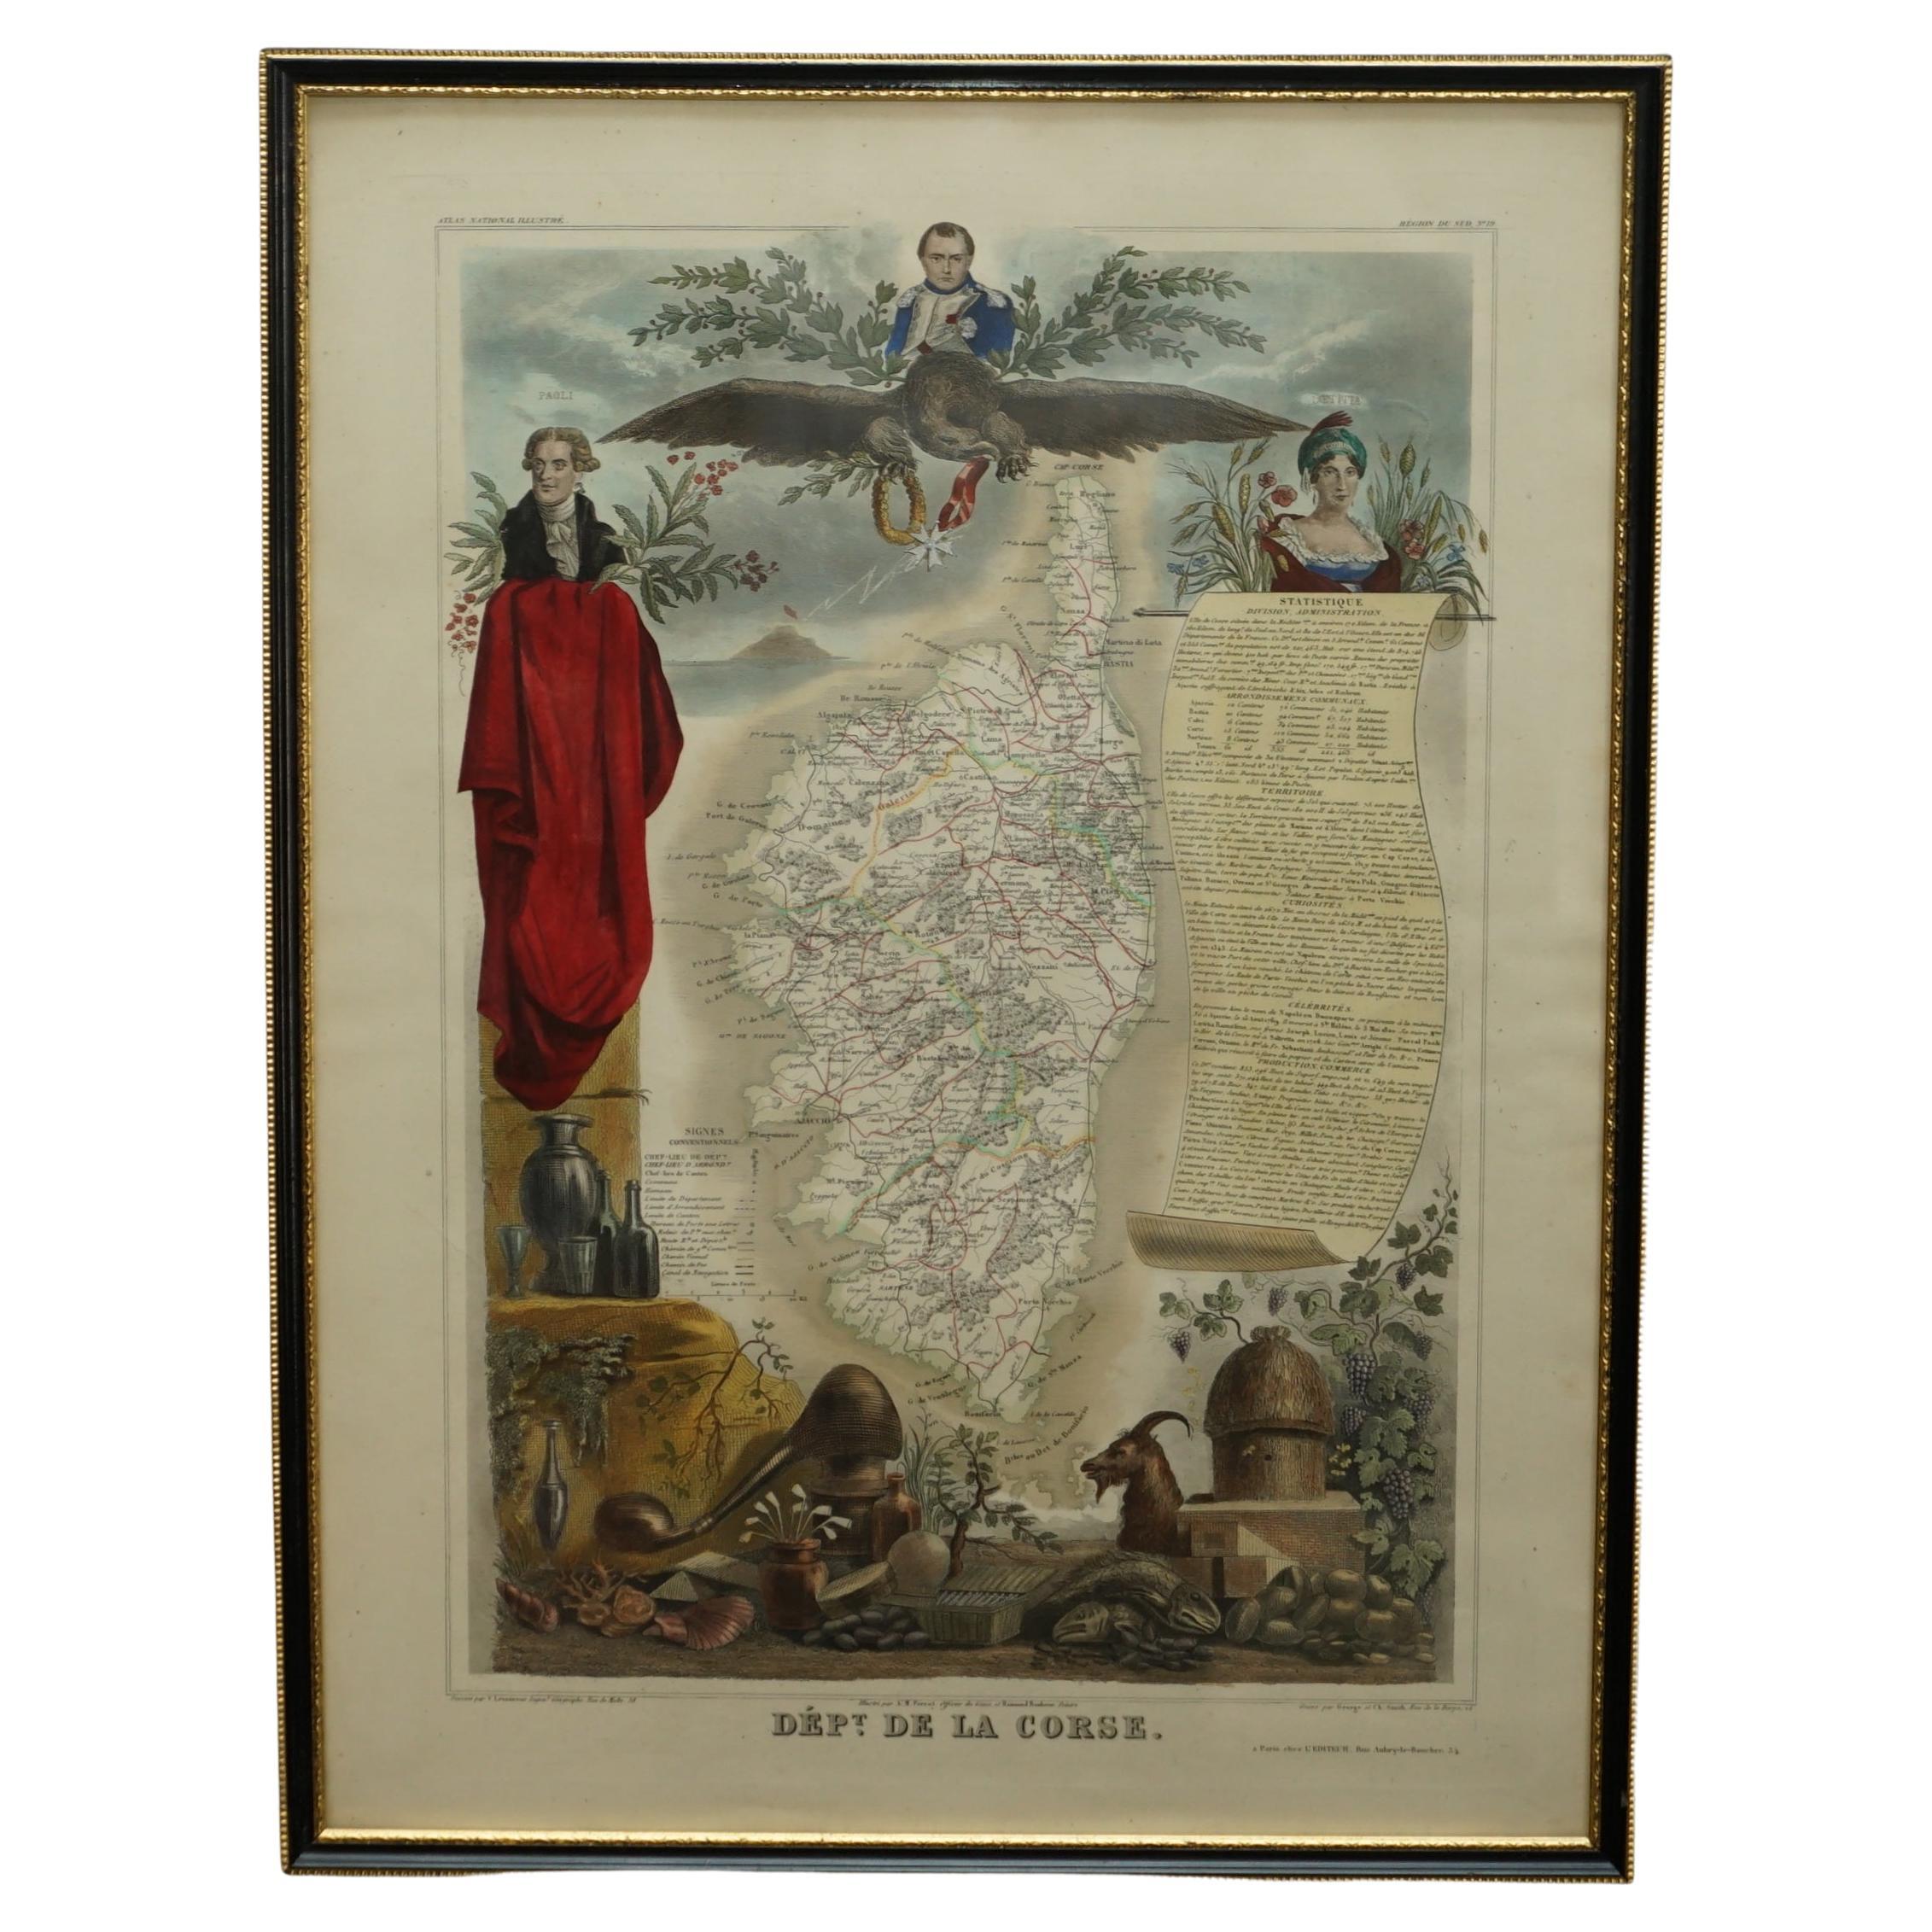 Magnifique carte à l'aquarelle française ancienne de 1856 en couleur, réalisée à la main, du département des La Corse